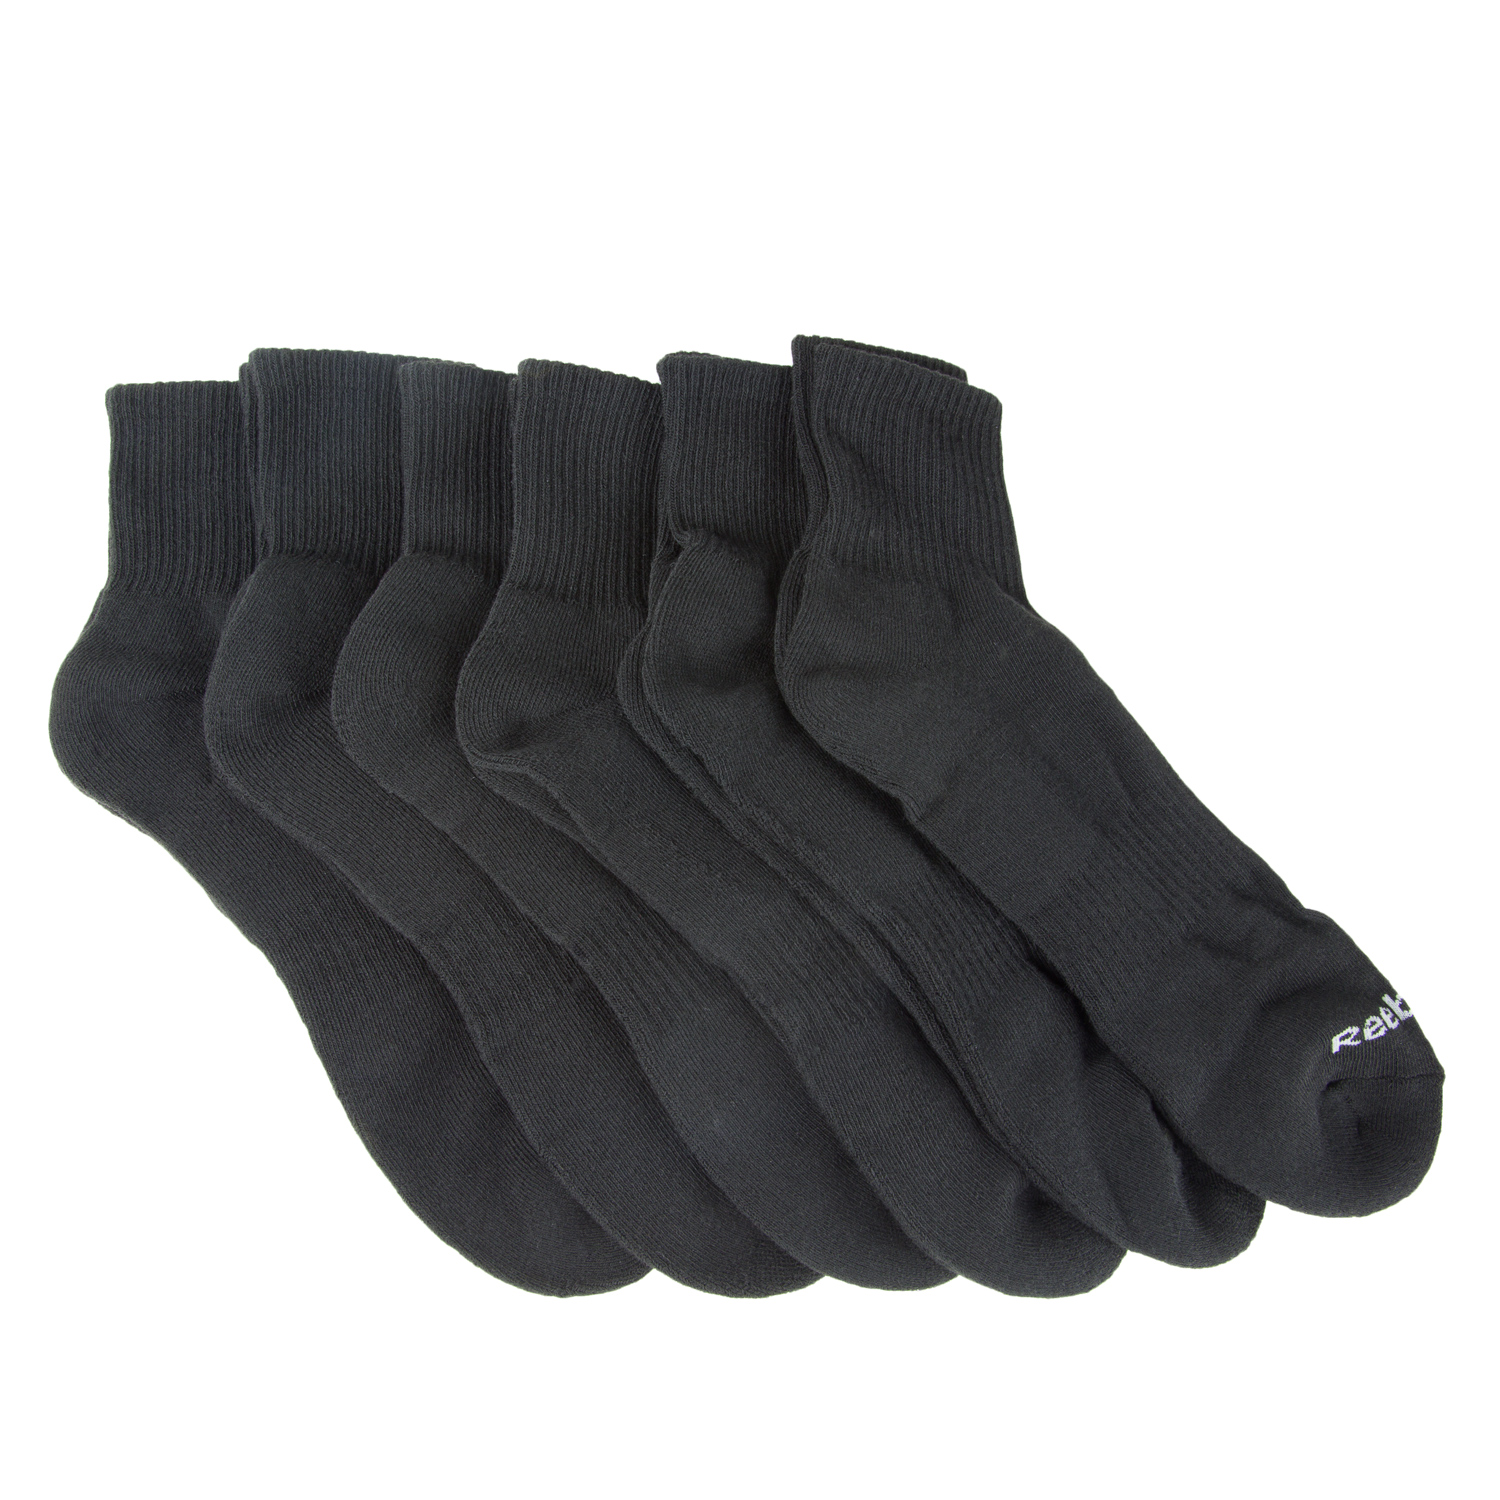 Reebok Men's 6 Pack XL Quarter Cut Socks Sz 12.5-16 NEW | eBay